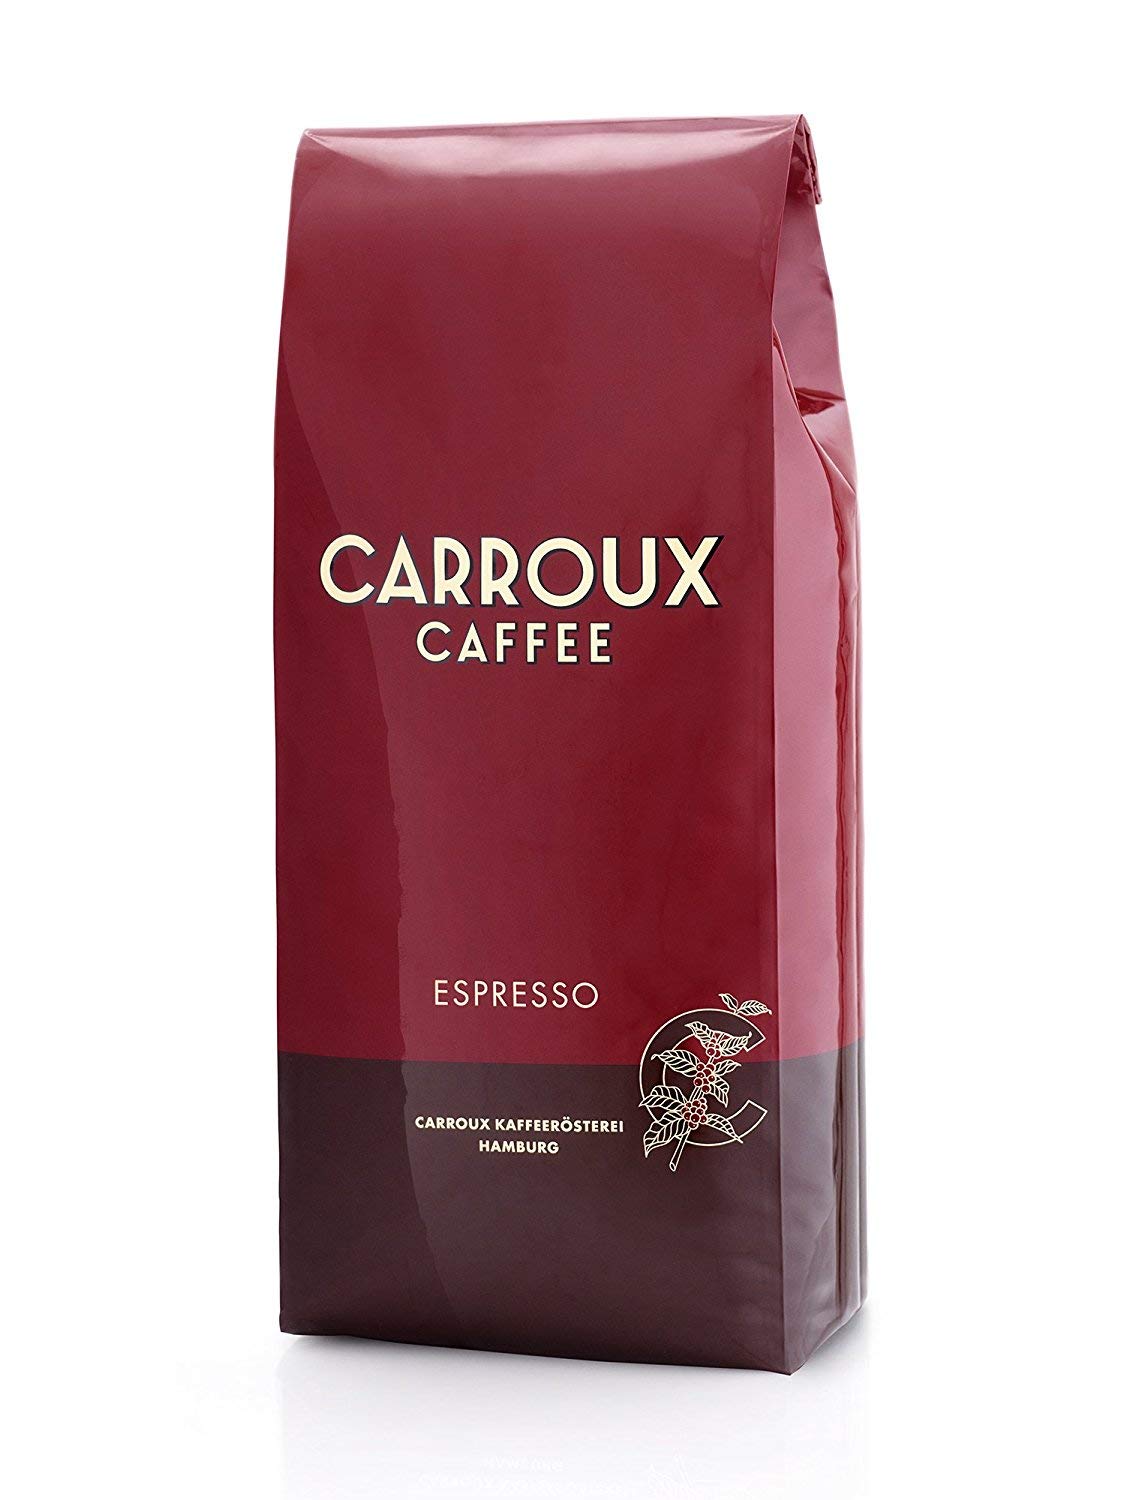 CARROUX Kaffeebohnen Espresso 1kg Pack - Feinster Premium Kaffee - Für Kaffeevollautomat u. Siebträgermaschine - Ganze Bohnen frisch geröstet